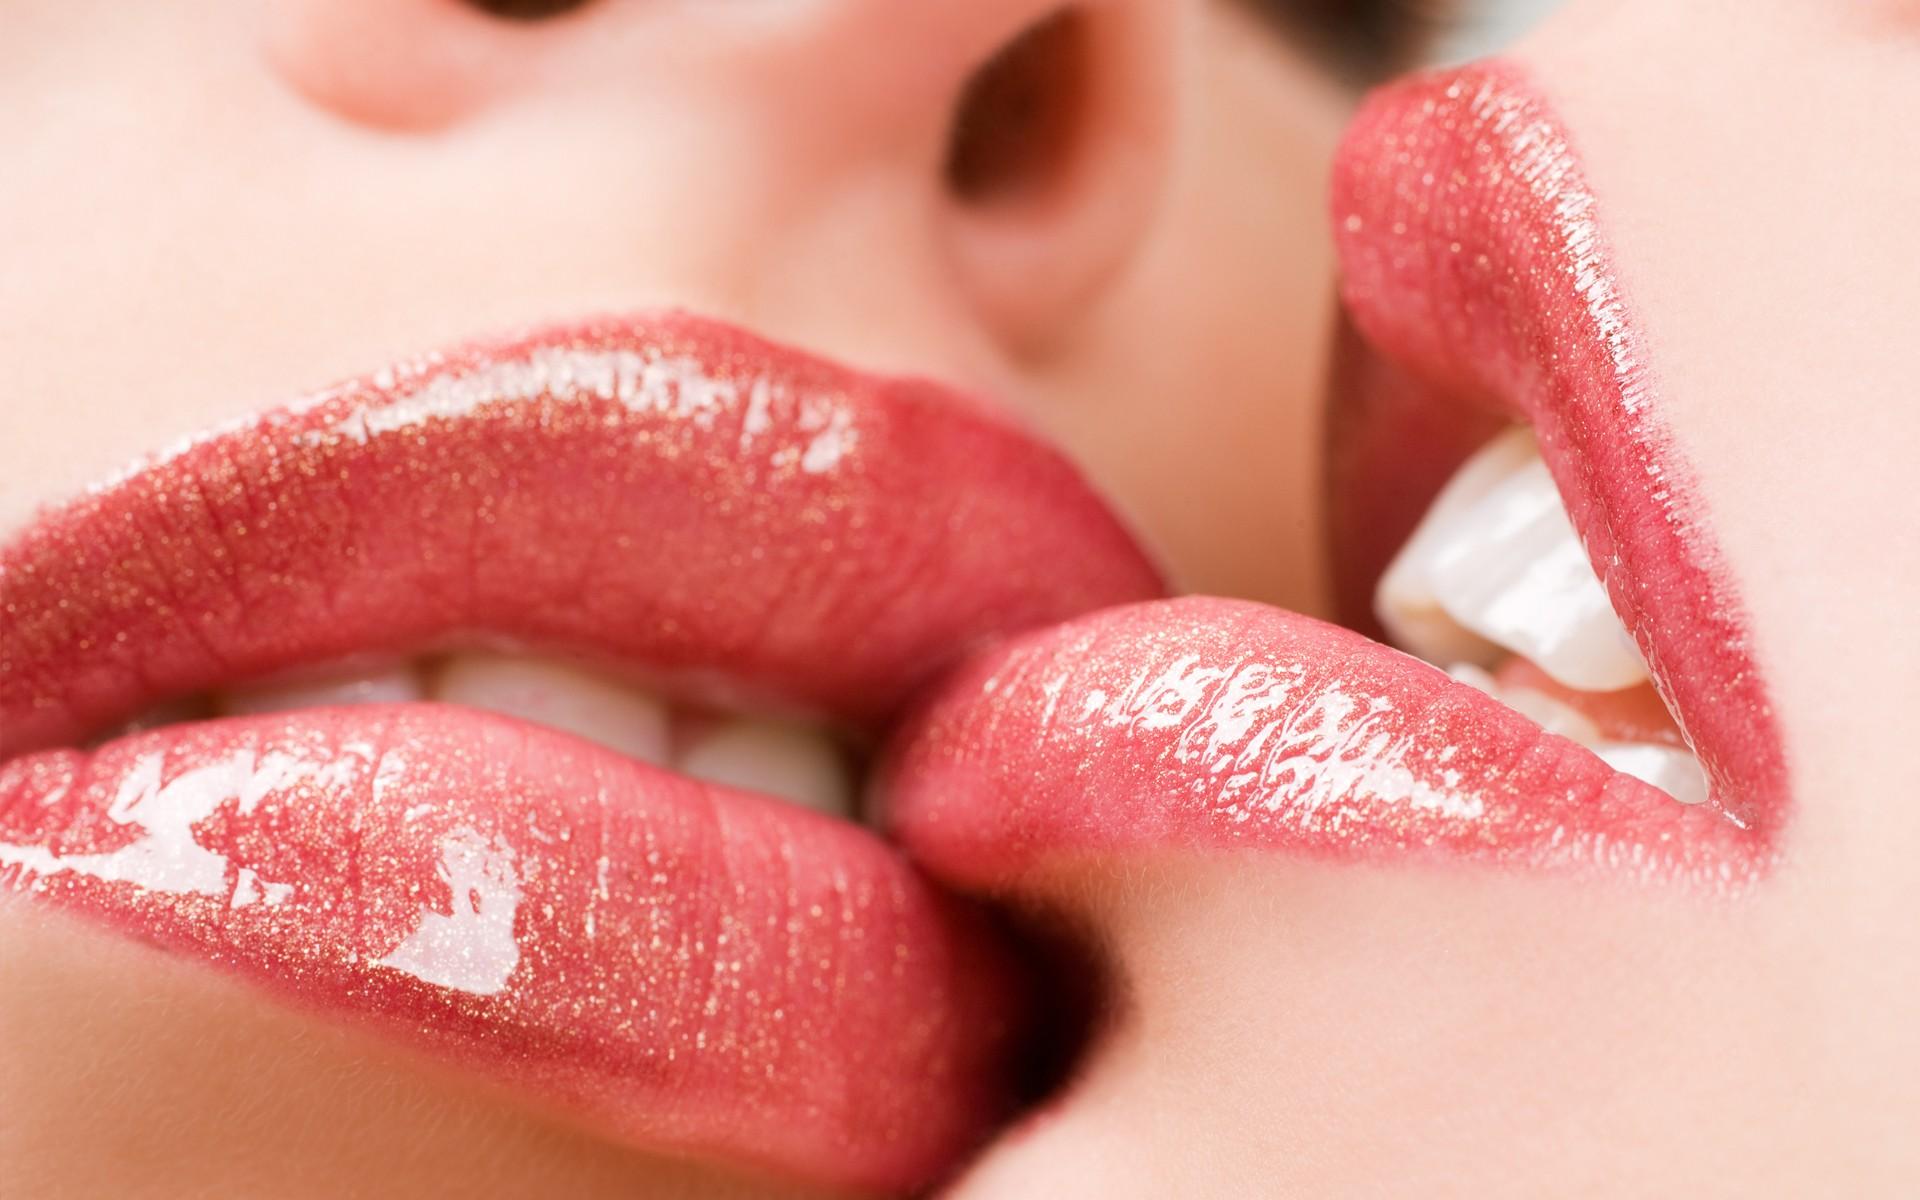 Wallpaper, face, women, model, open mouth, red, closeup, lipstick